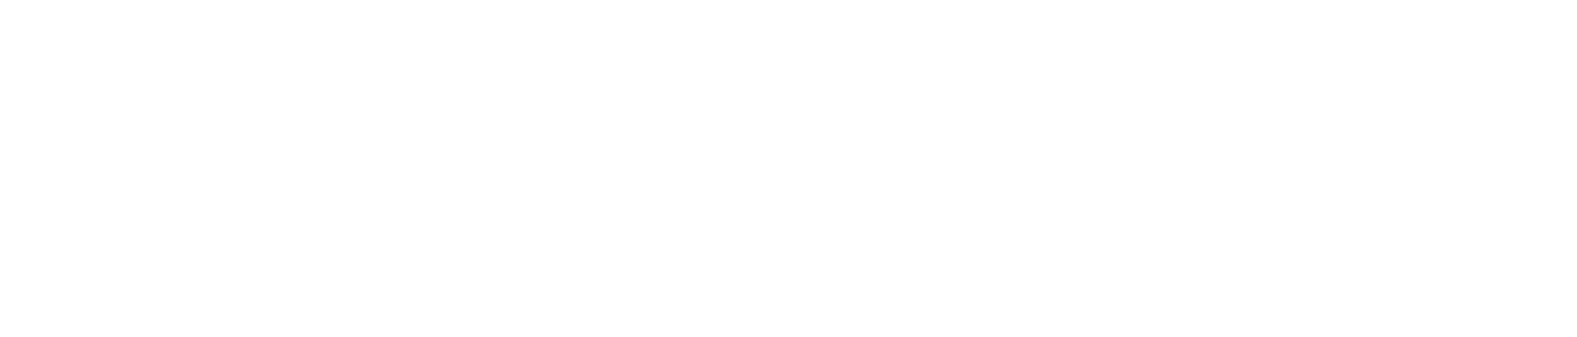 Fresenius Medical Care logo large for dark backgrounds (transparent PNG)